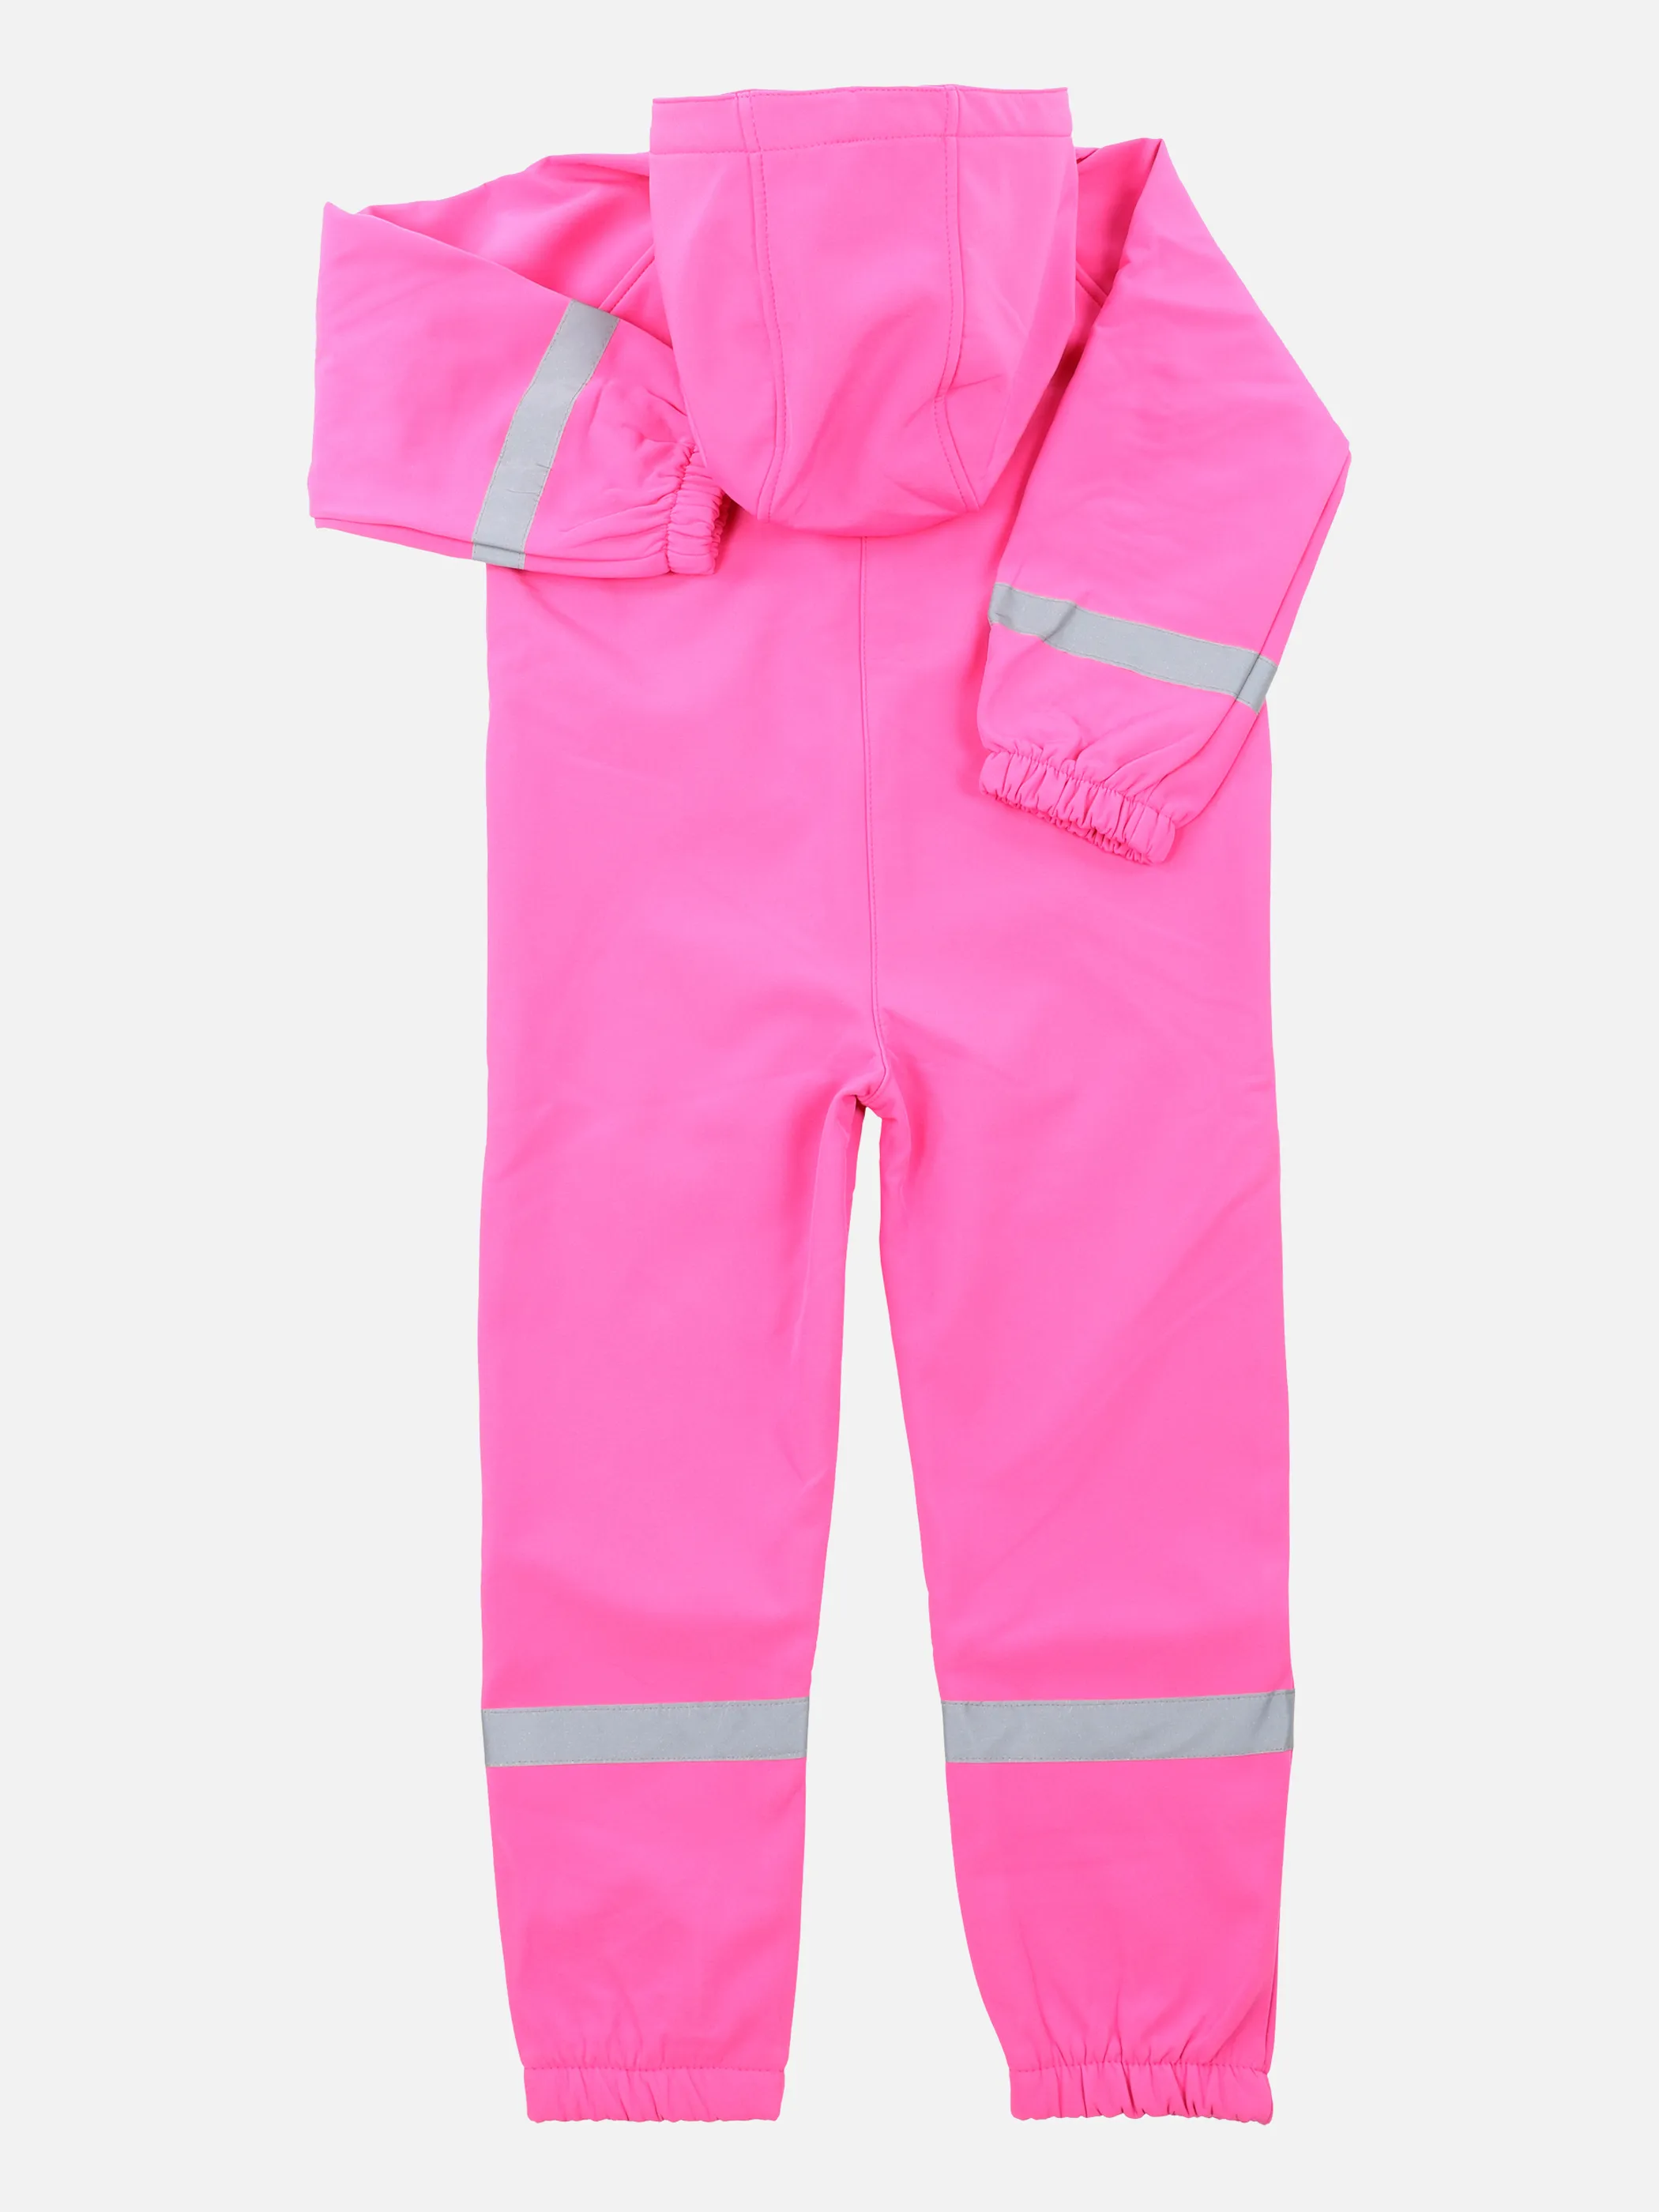 Kinder Regenoverall mit Kapuze | PINK | noSize | 862272-pink